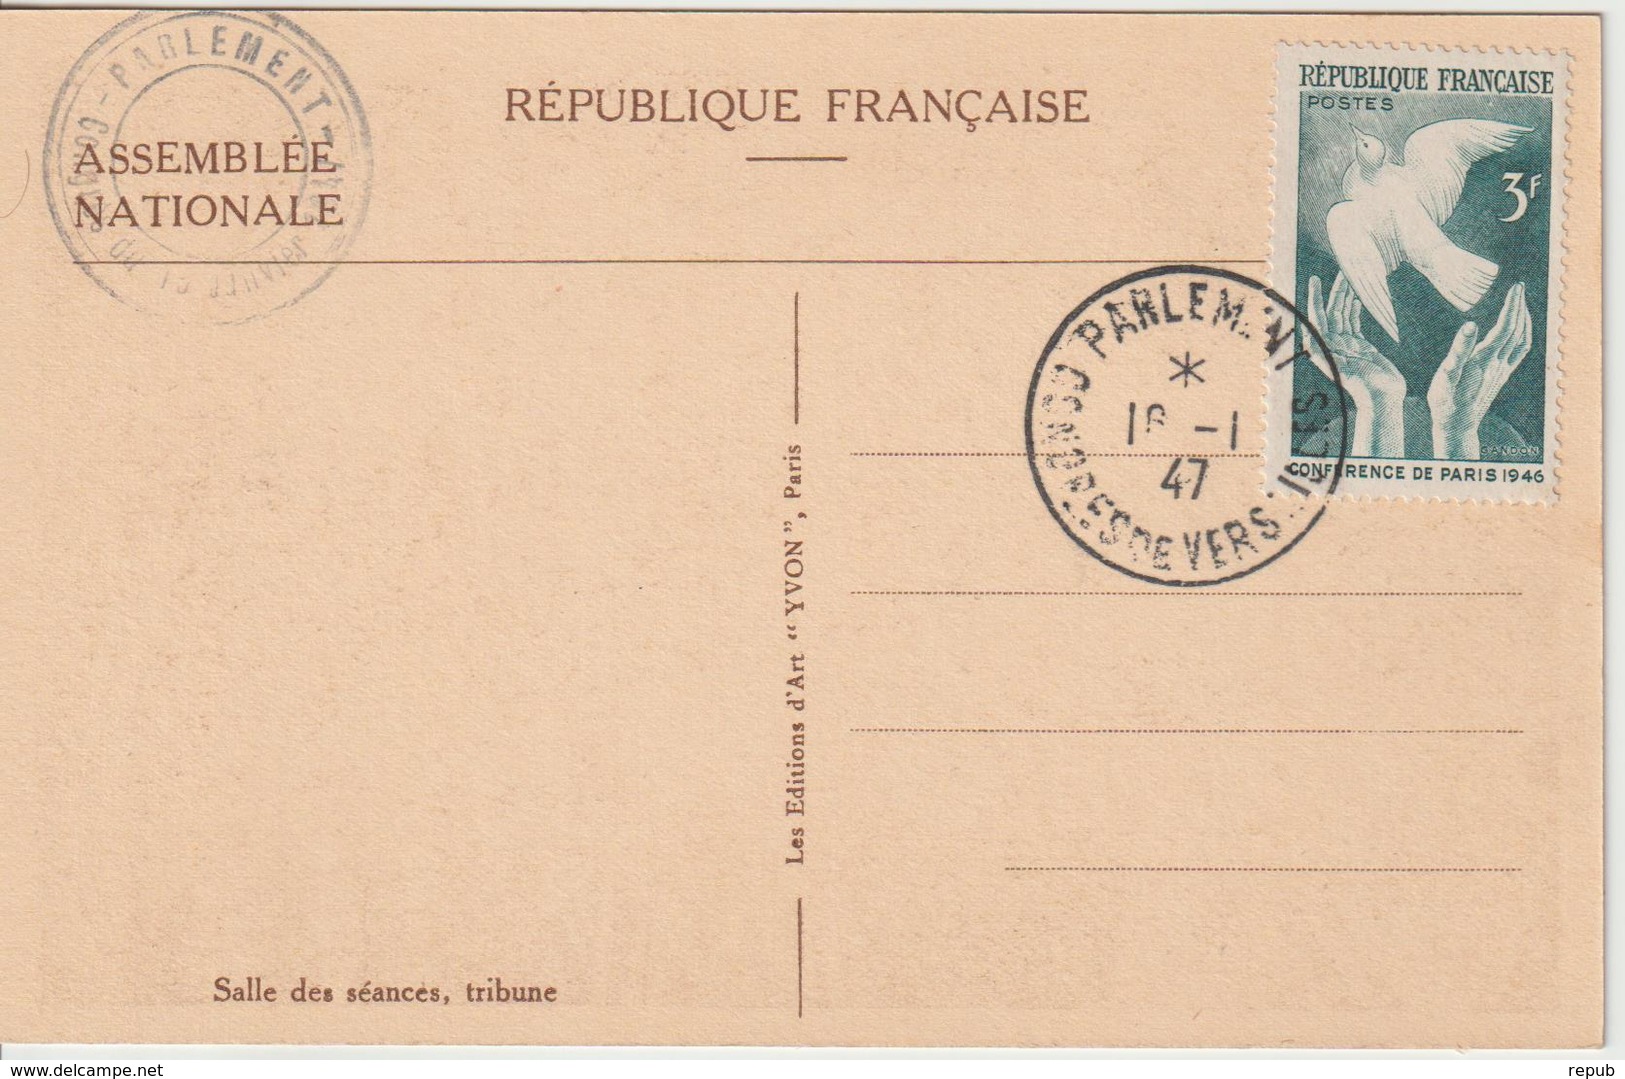 France Oblit Congrès Du Parlement 1947 - 1921-1960: Periodo Moderno